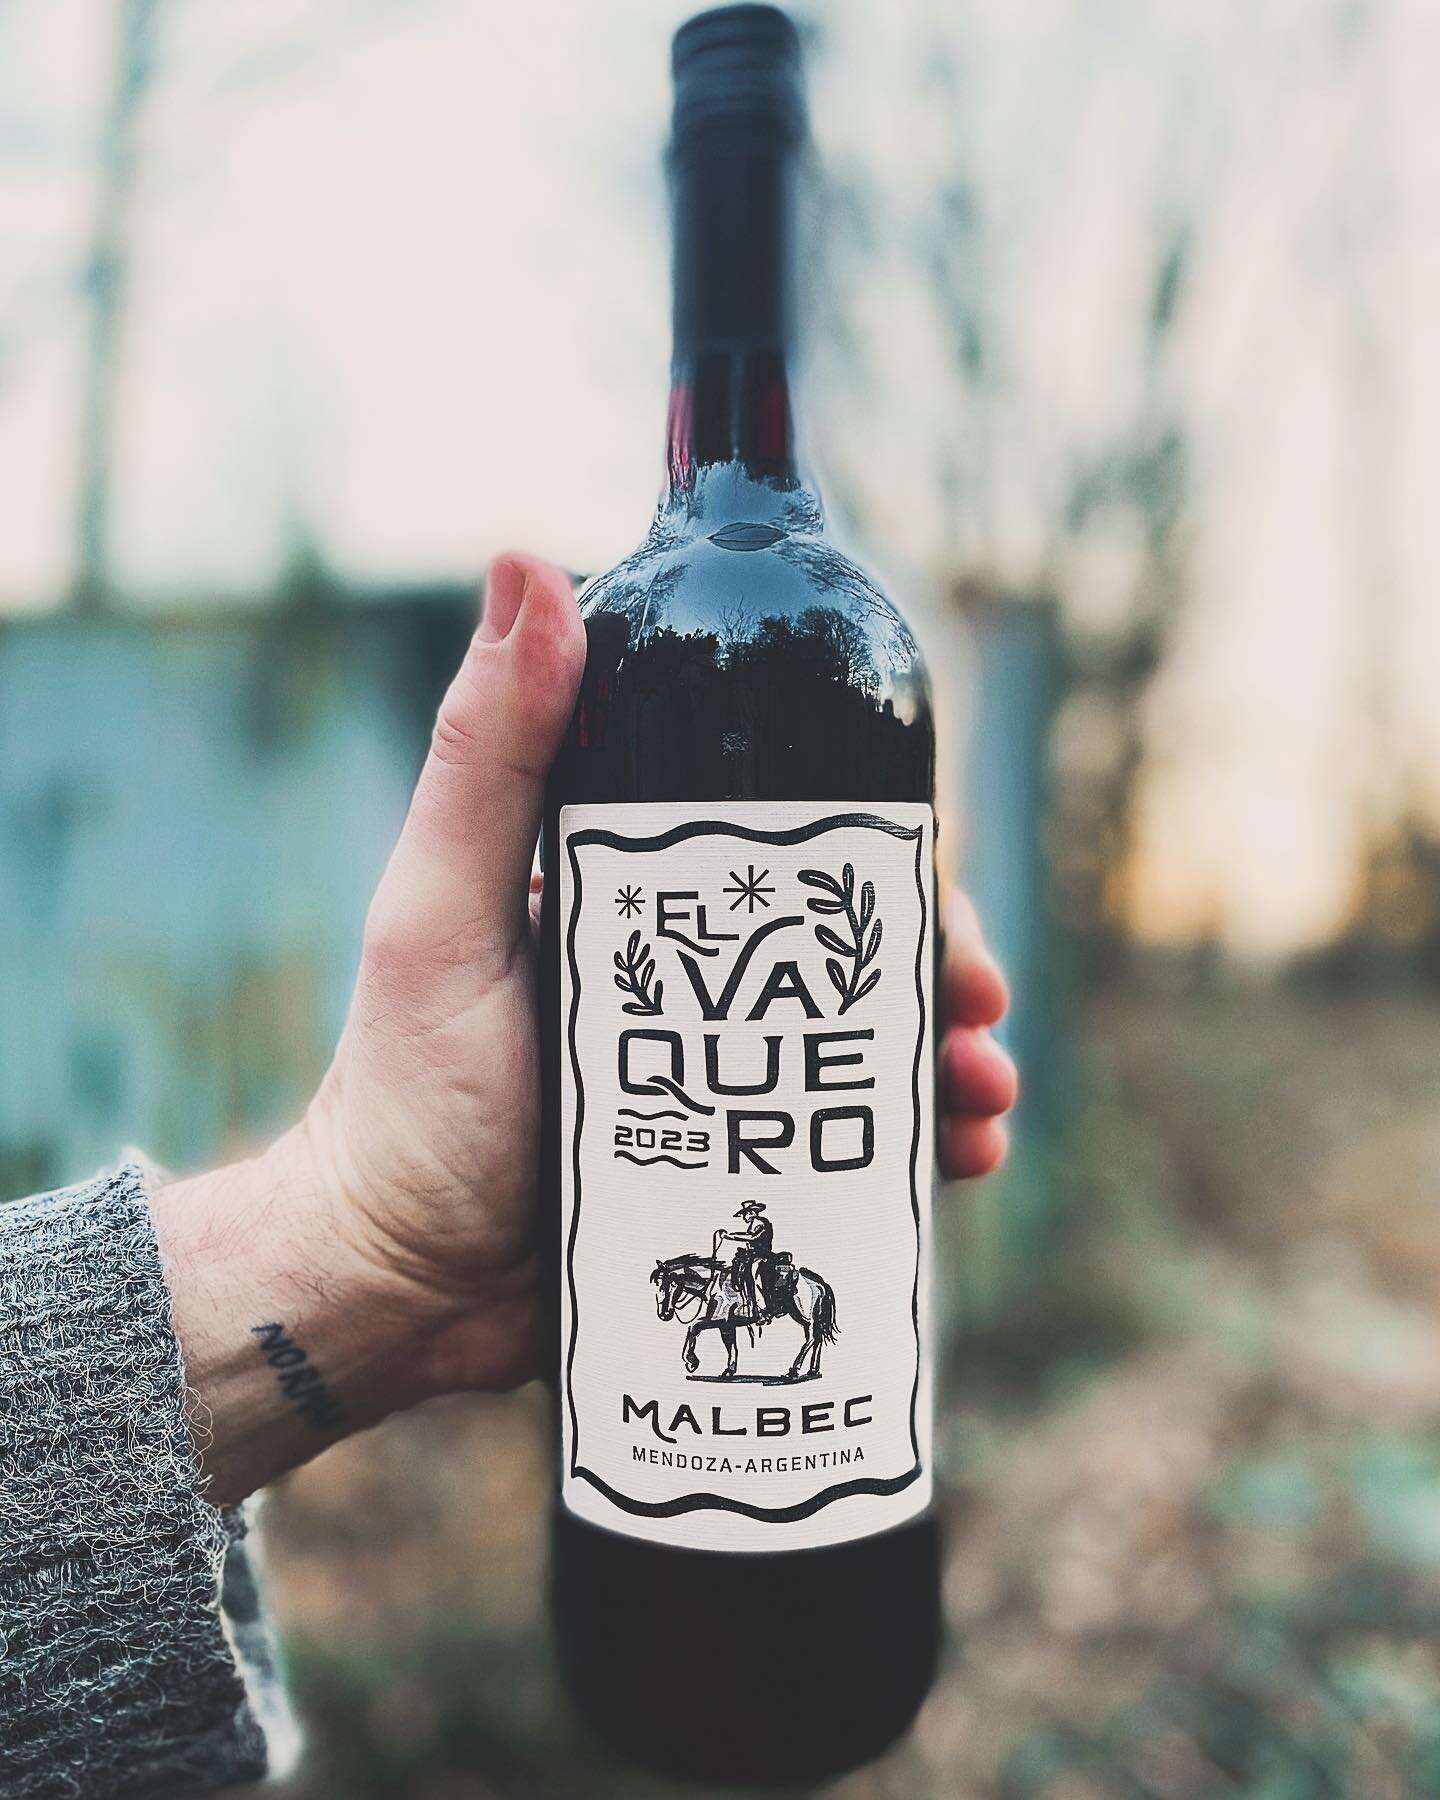 We&rsquo;ve updated our favourite cowboy! 🤠&hellip;still the same wonderful Malbec&hellip;enjoy!

#malbec #malbecwine #winesofargentina #argentianwine #redwine #winelover #midweekwine #wineimporter
#gaucho